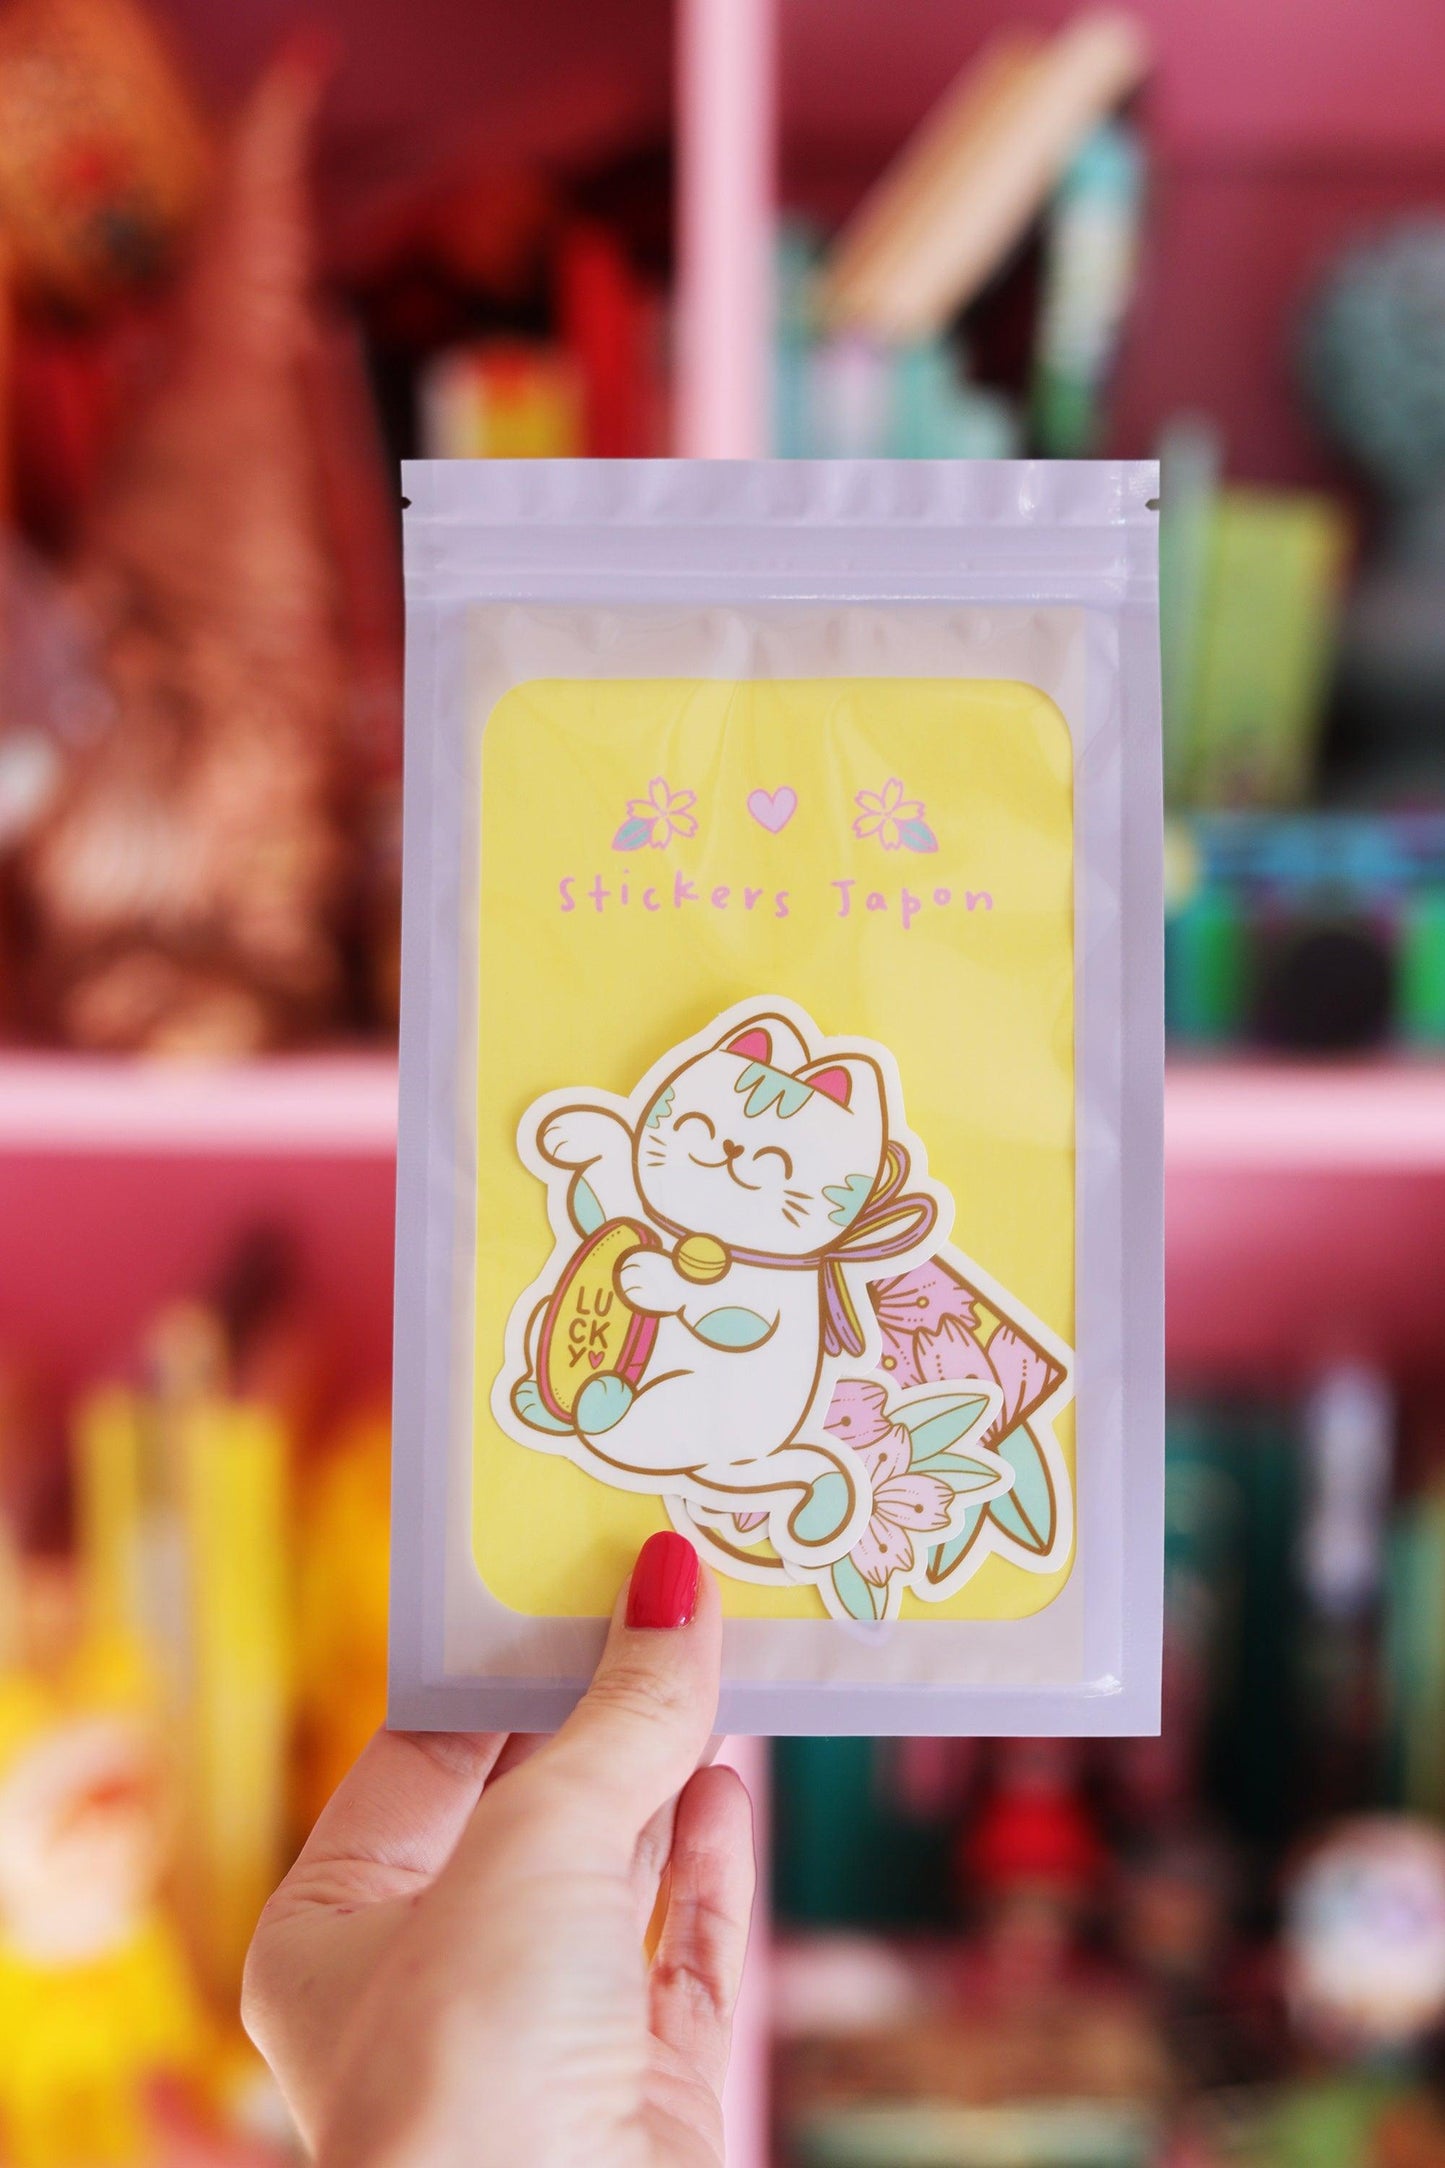 Stickers Japon - Shop Magique